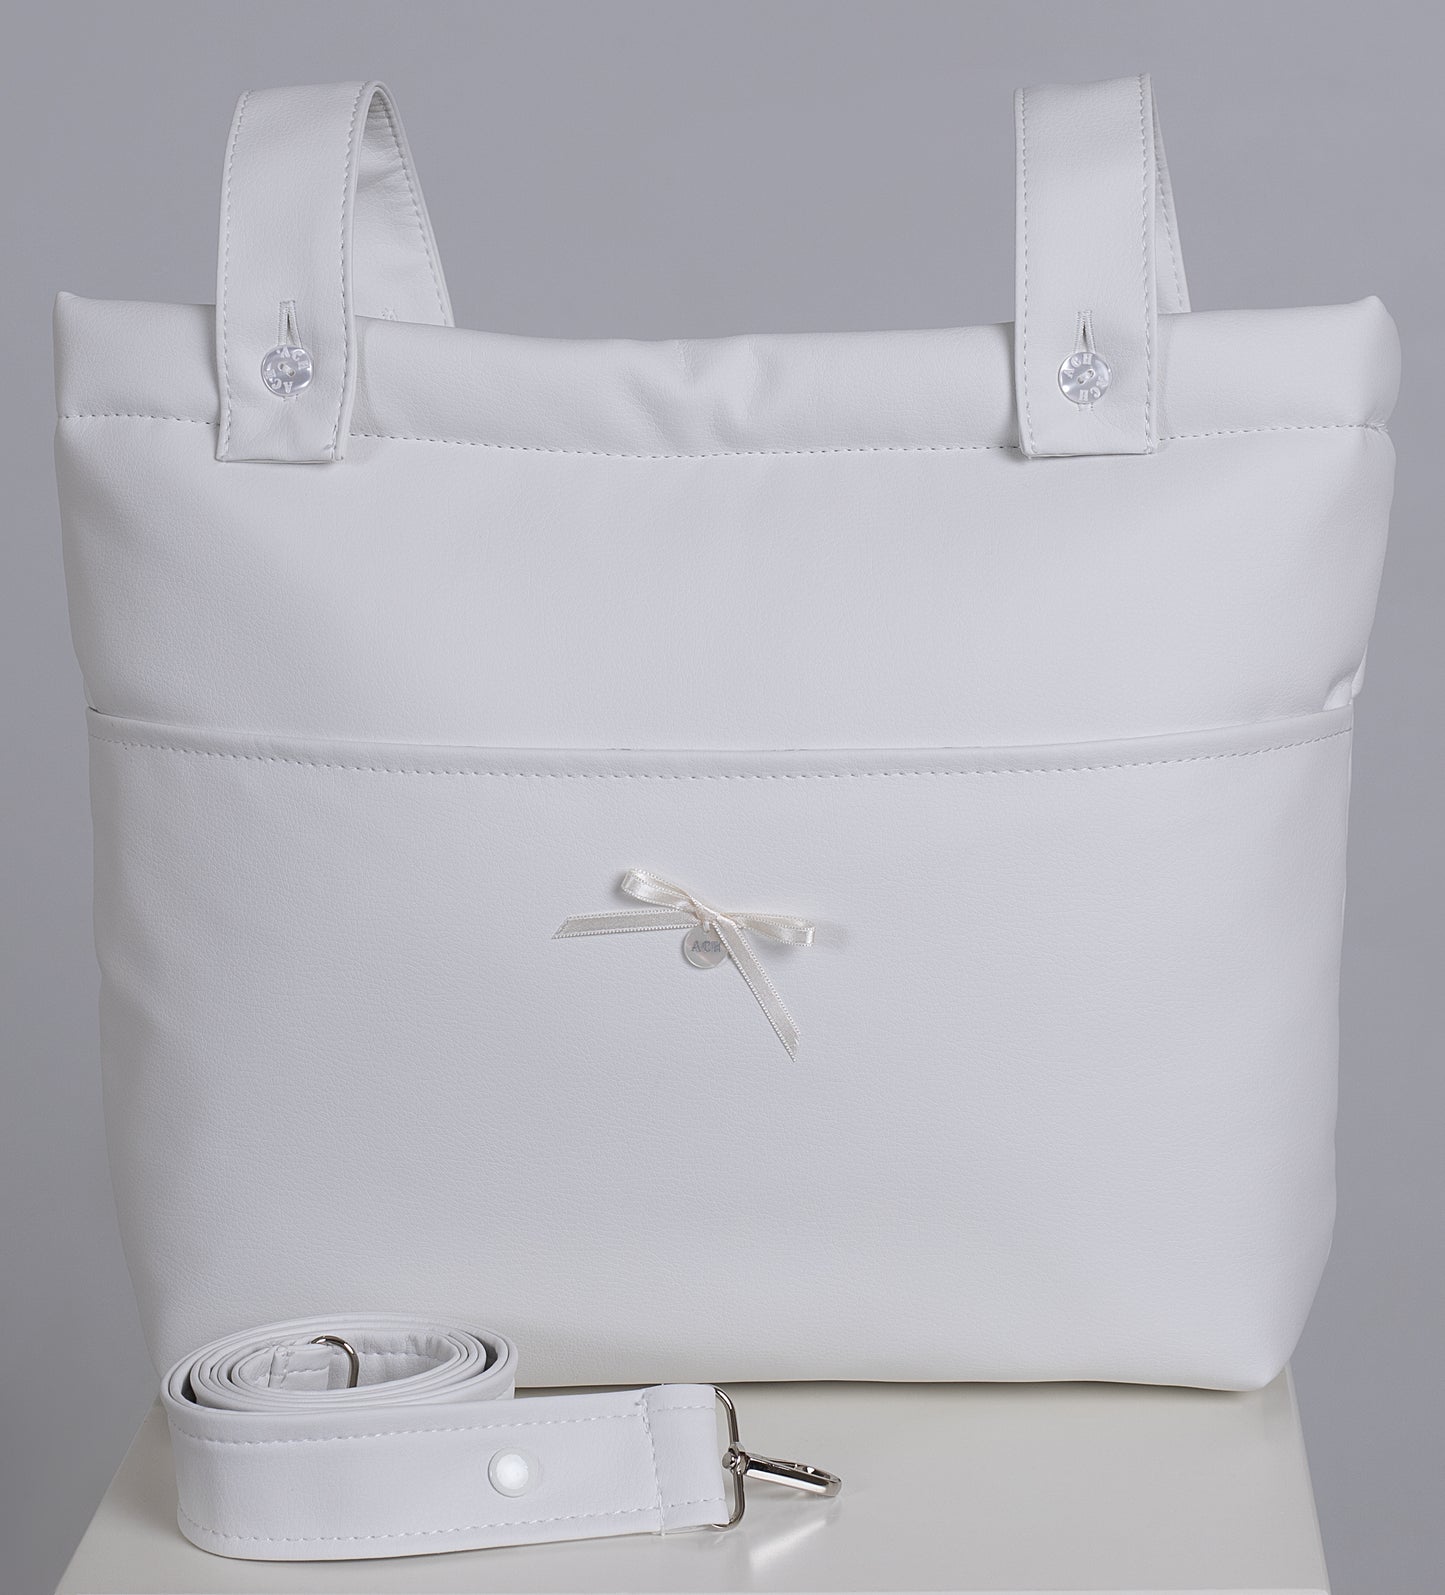 ARTESANIA CHARI Leatherette Short Strap Pram Bag